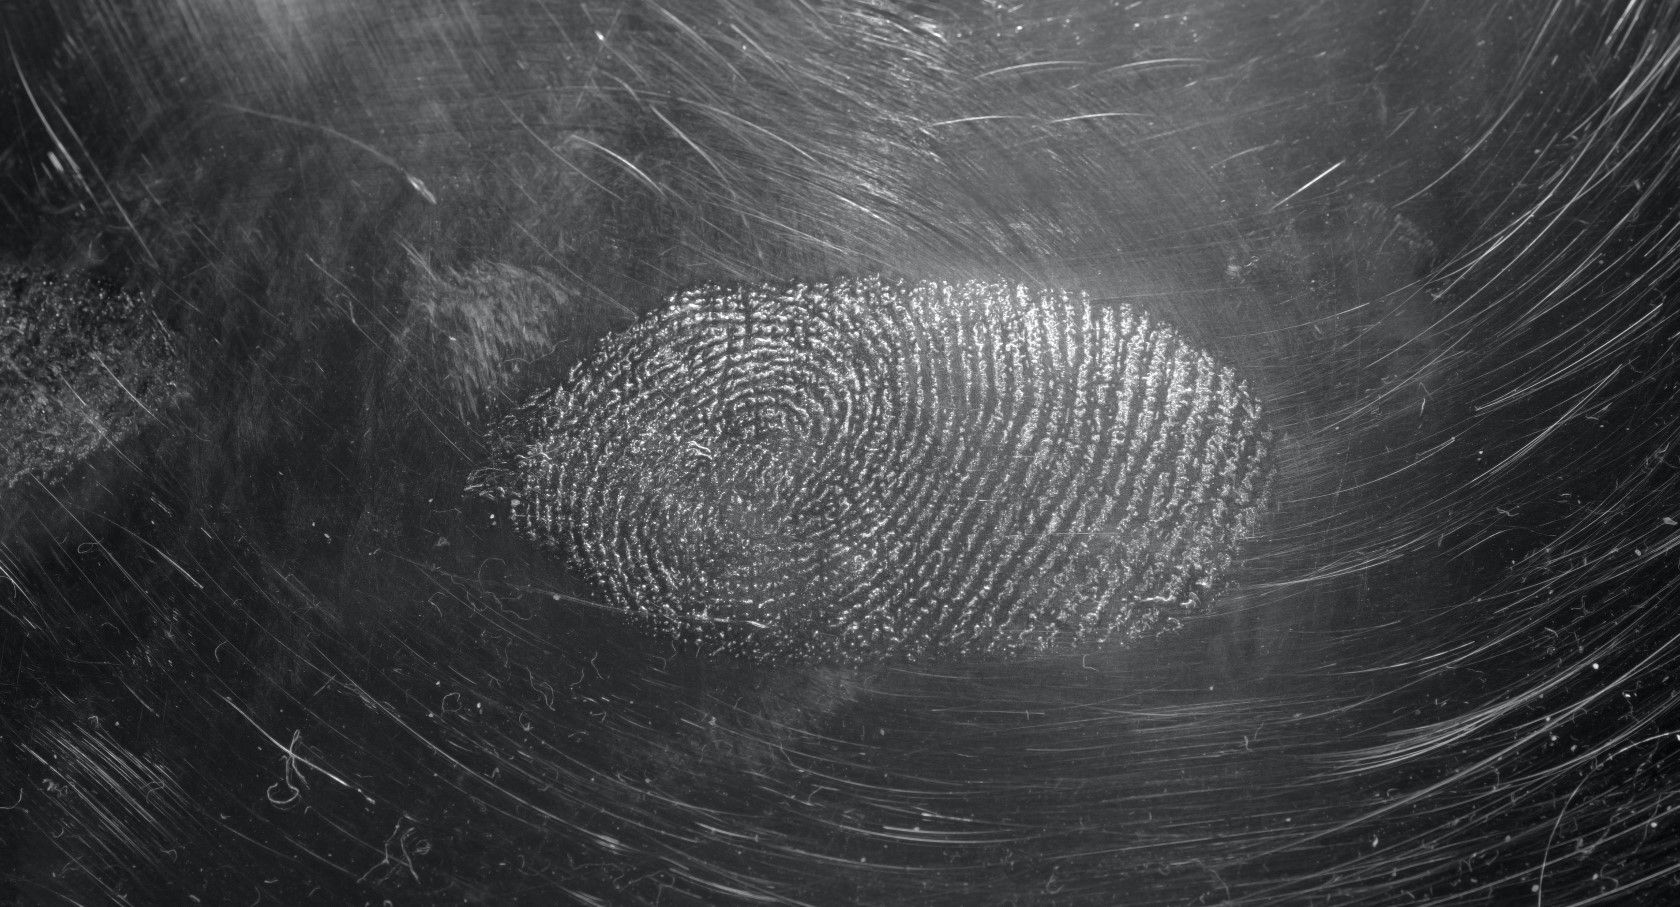 Fingerprint smudge on glass lens